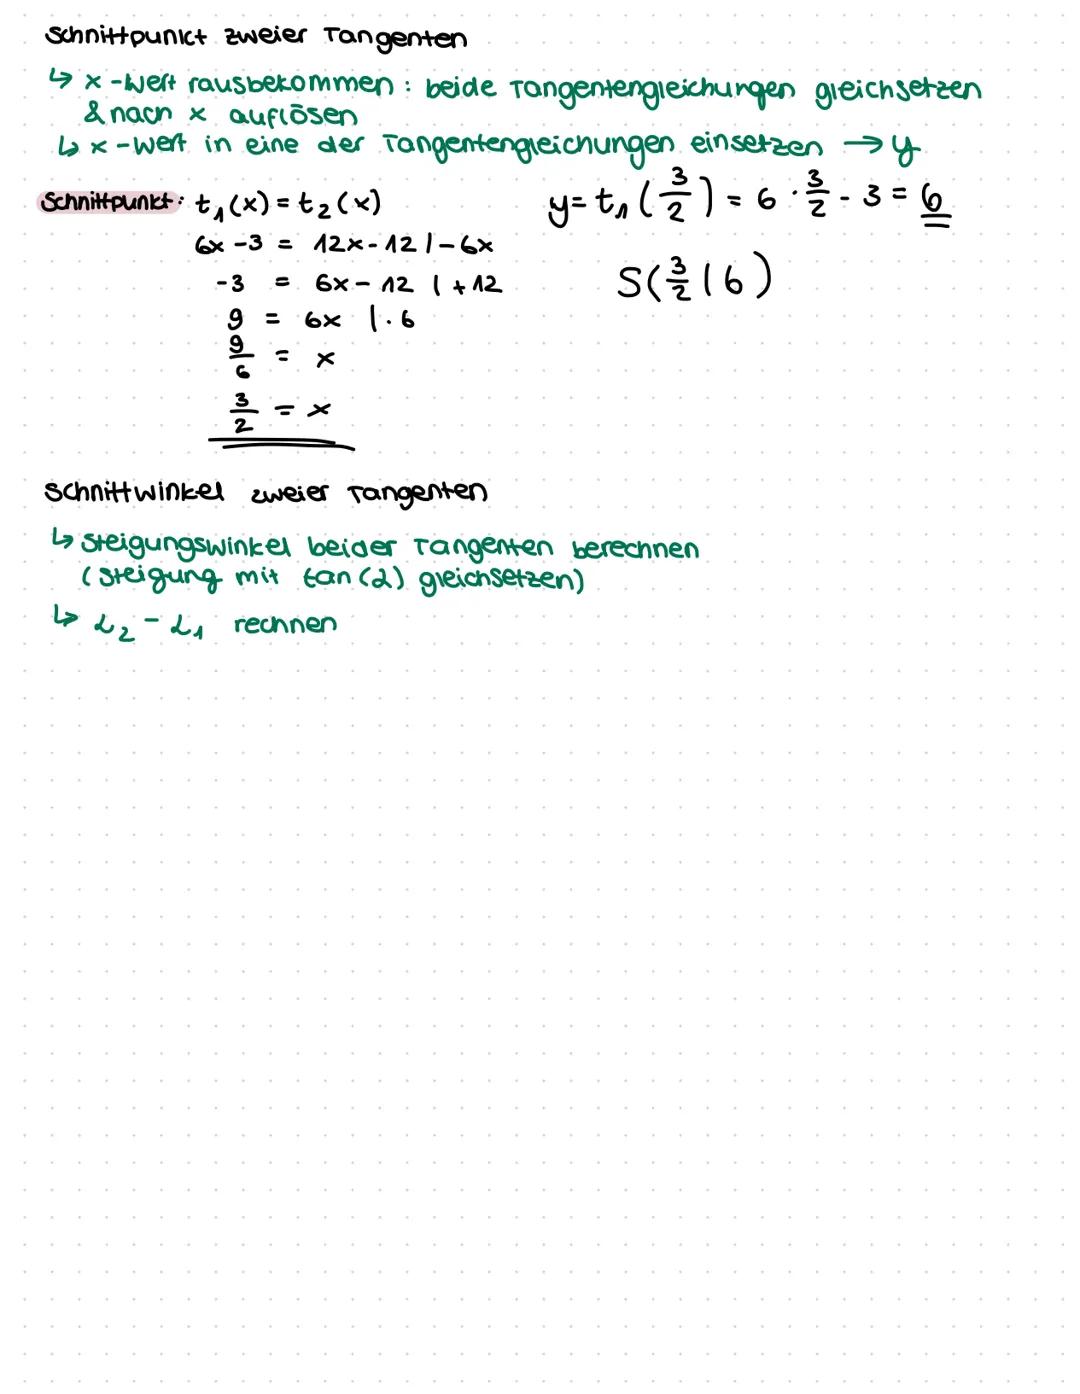 1. Ableitungsregein
MATHE-KLASSENARBEIT
Differenzialrechnung, Ableitungen, Tangente, Normale
Potenzregel: f(x) = xn
f'(x)=n·x^-^
Faktorregel